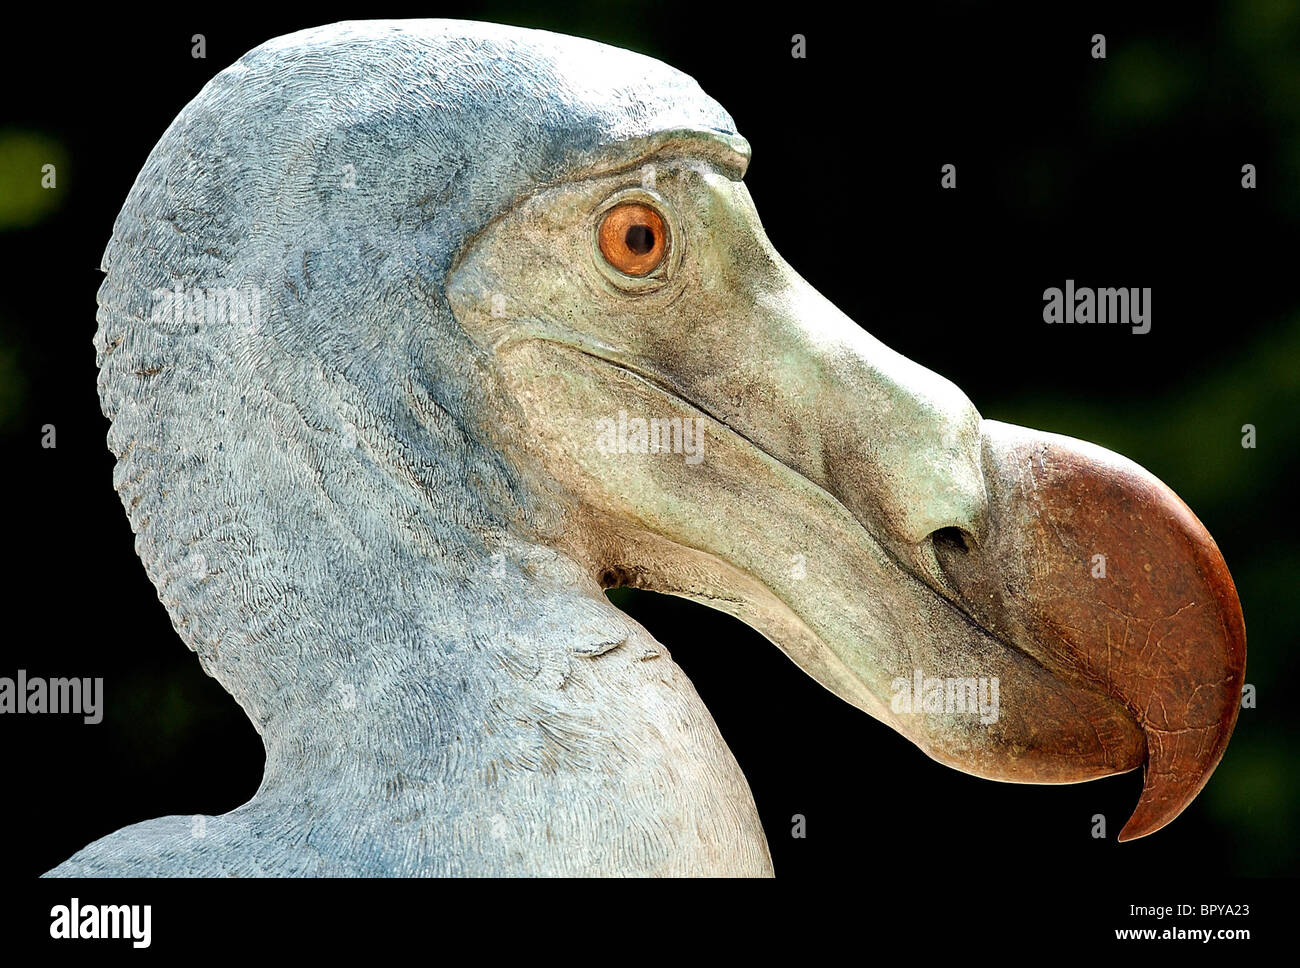 bronze-of-a-dodo-bird-BPYA23.jpg